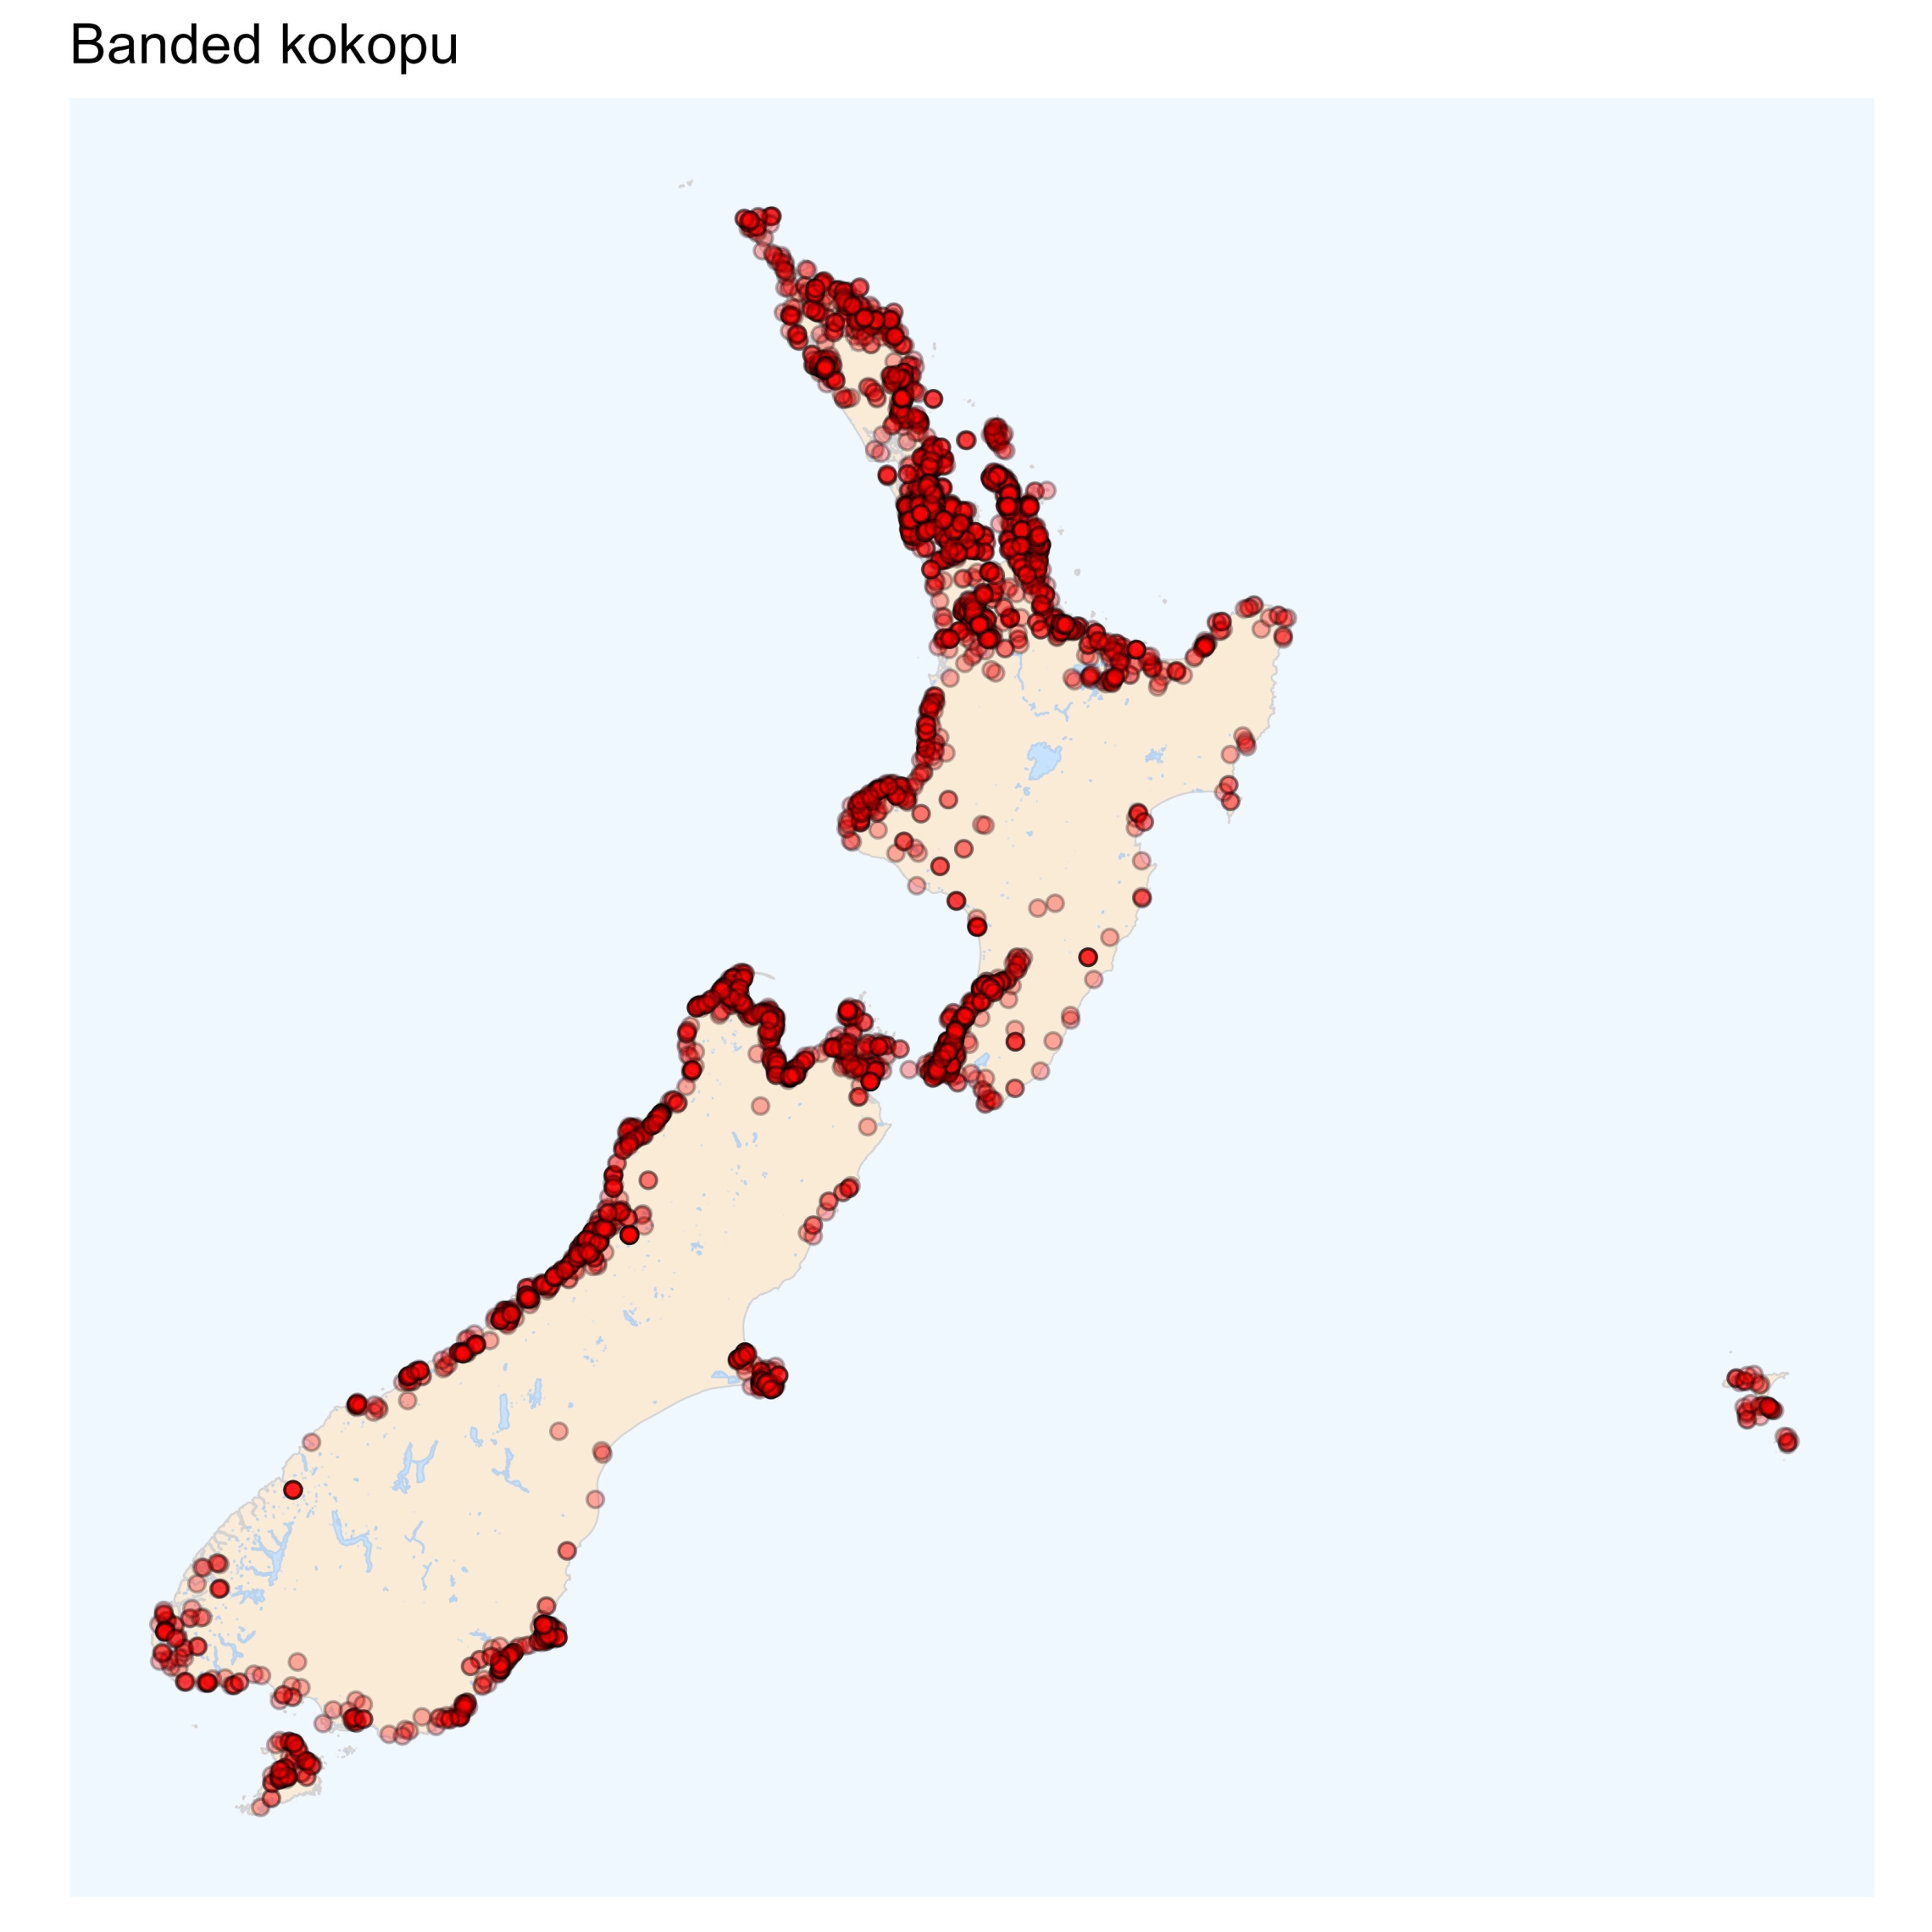 Banded kokopu - distribution maps